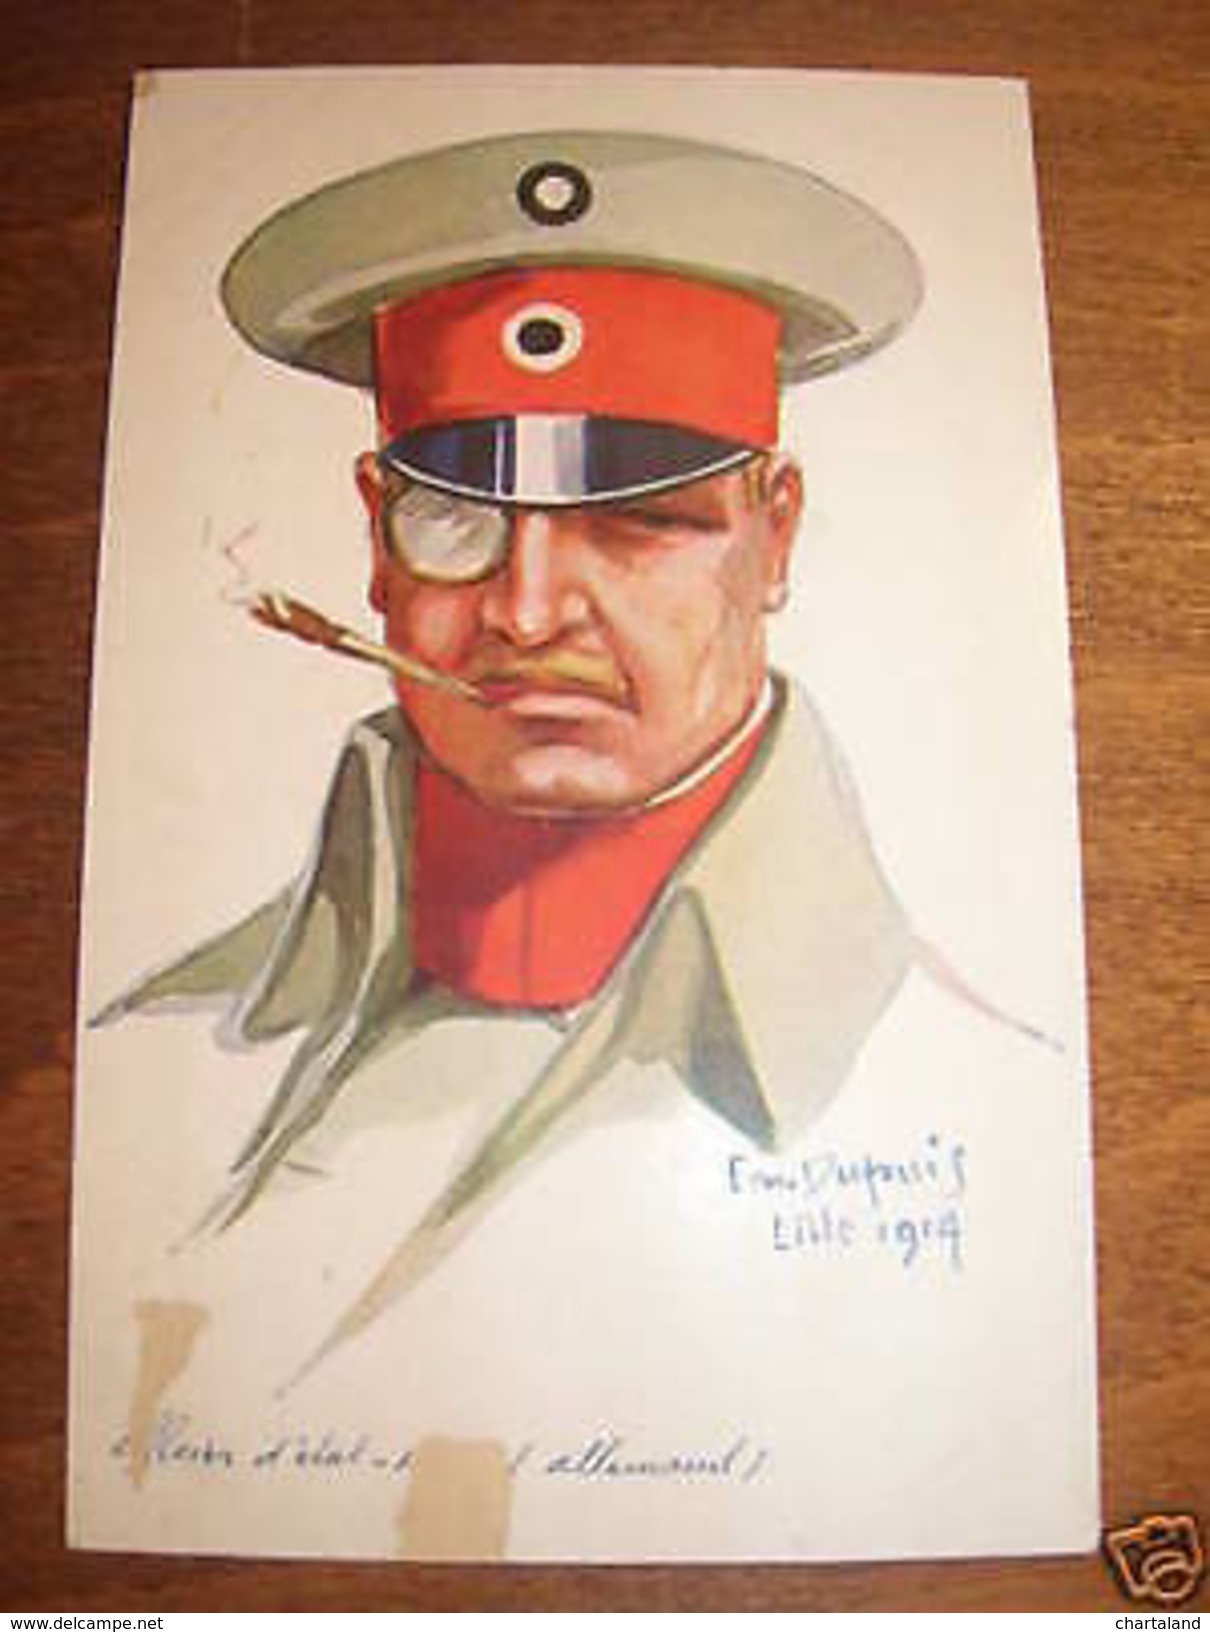 Cartolina Militaria Copricapo Dupuis Lille 1914 - Reggimenti